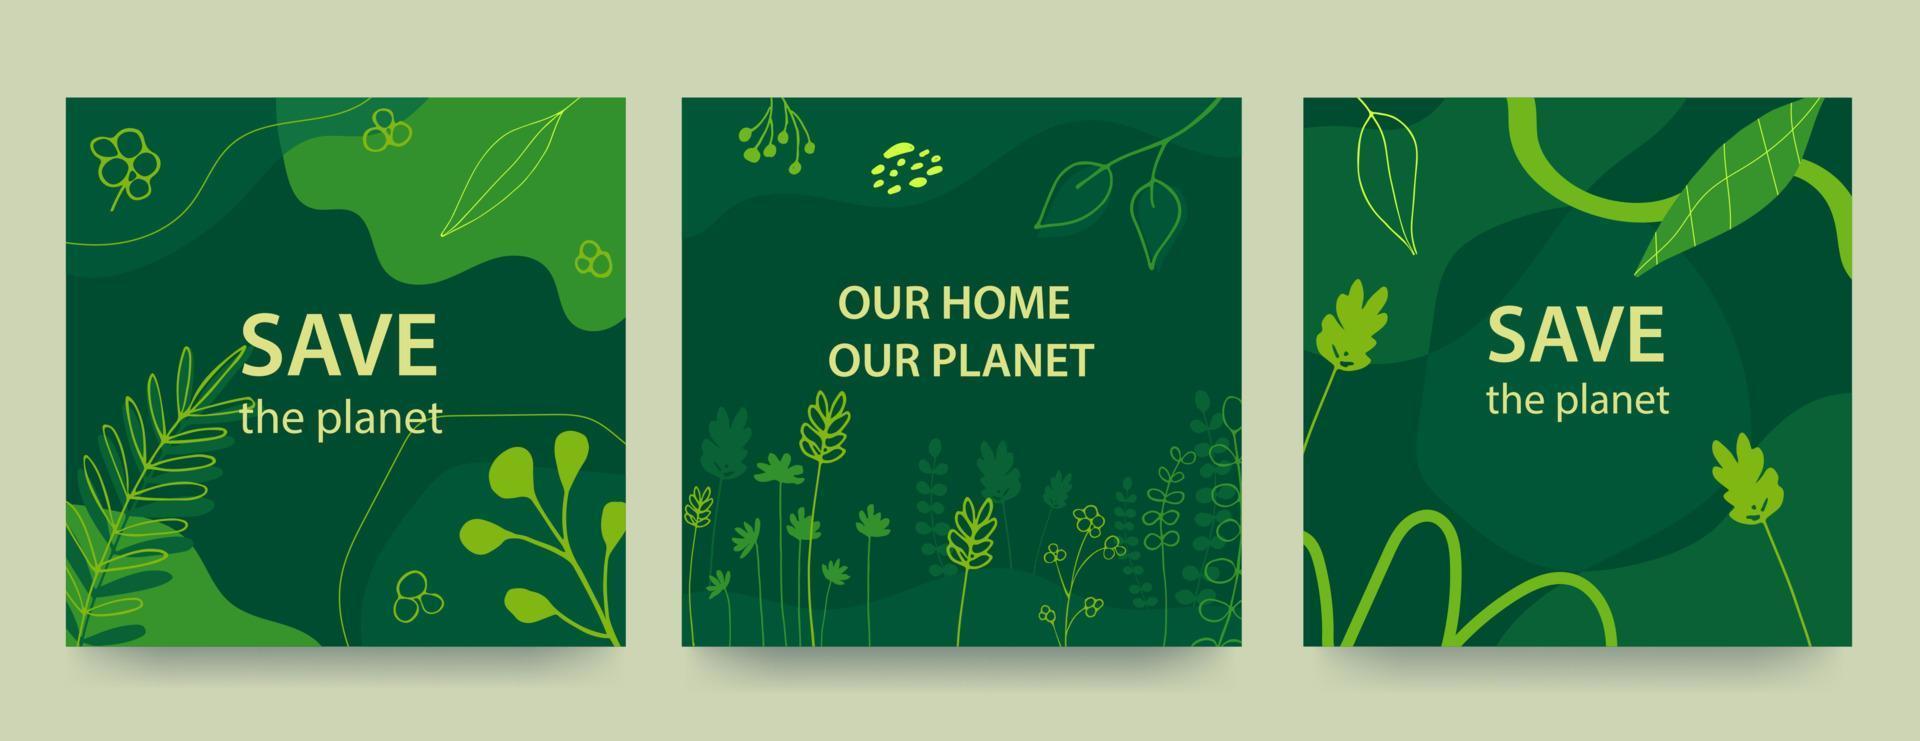 sfondo del giorno dell'ambiente con sfondo verde, forme liquide e piante. concetto ecologico. salva la Terra. illustrazione vettoriale